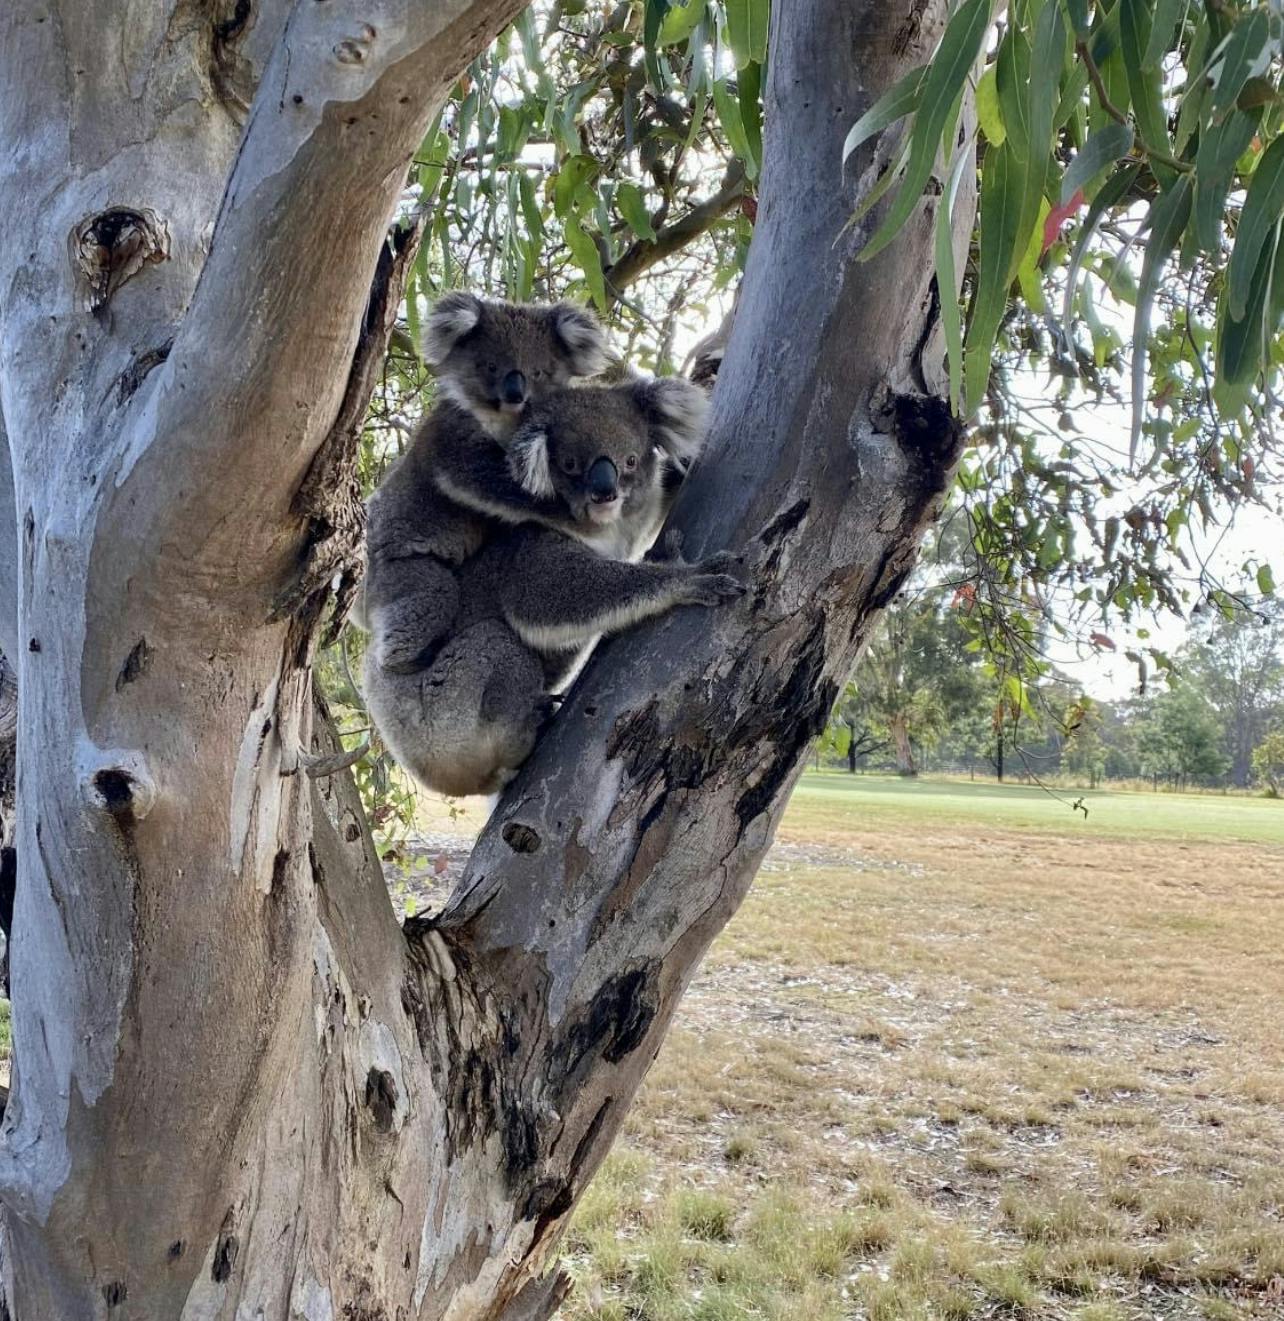 Koalas at Yarram golf course